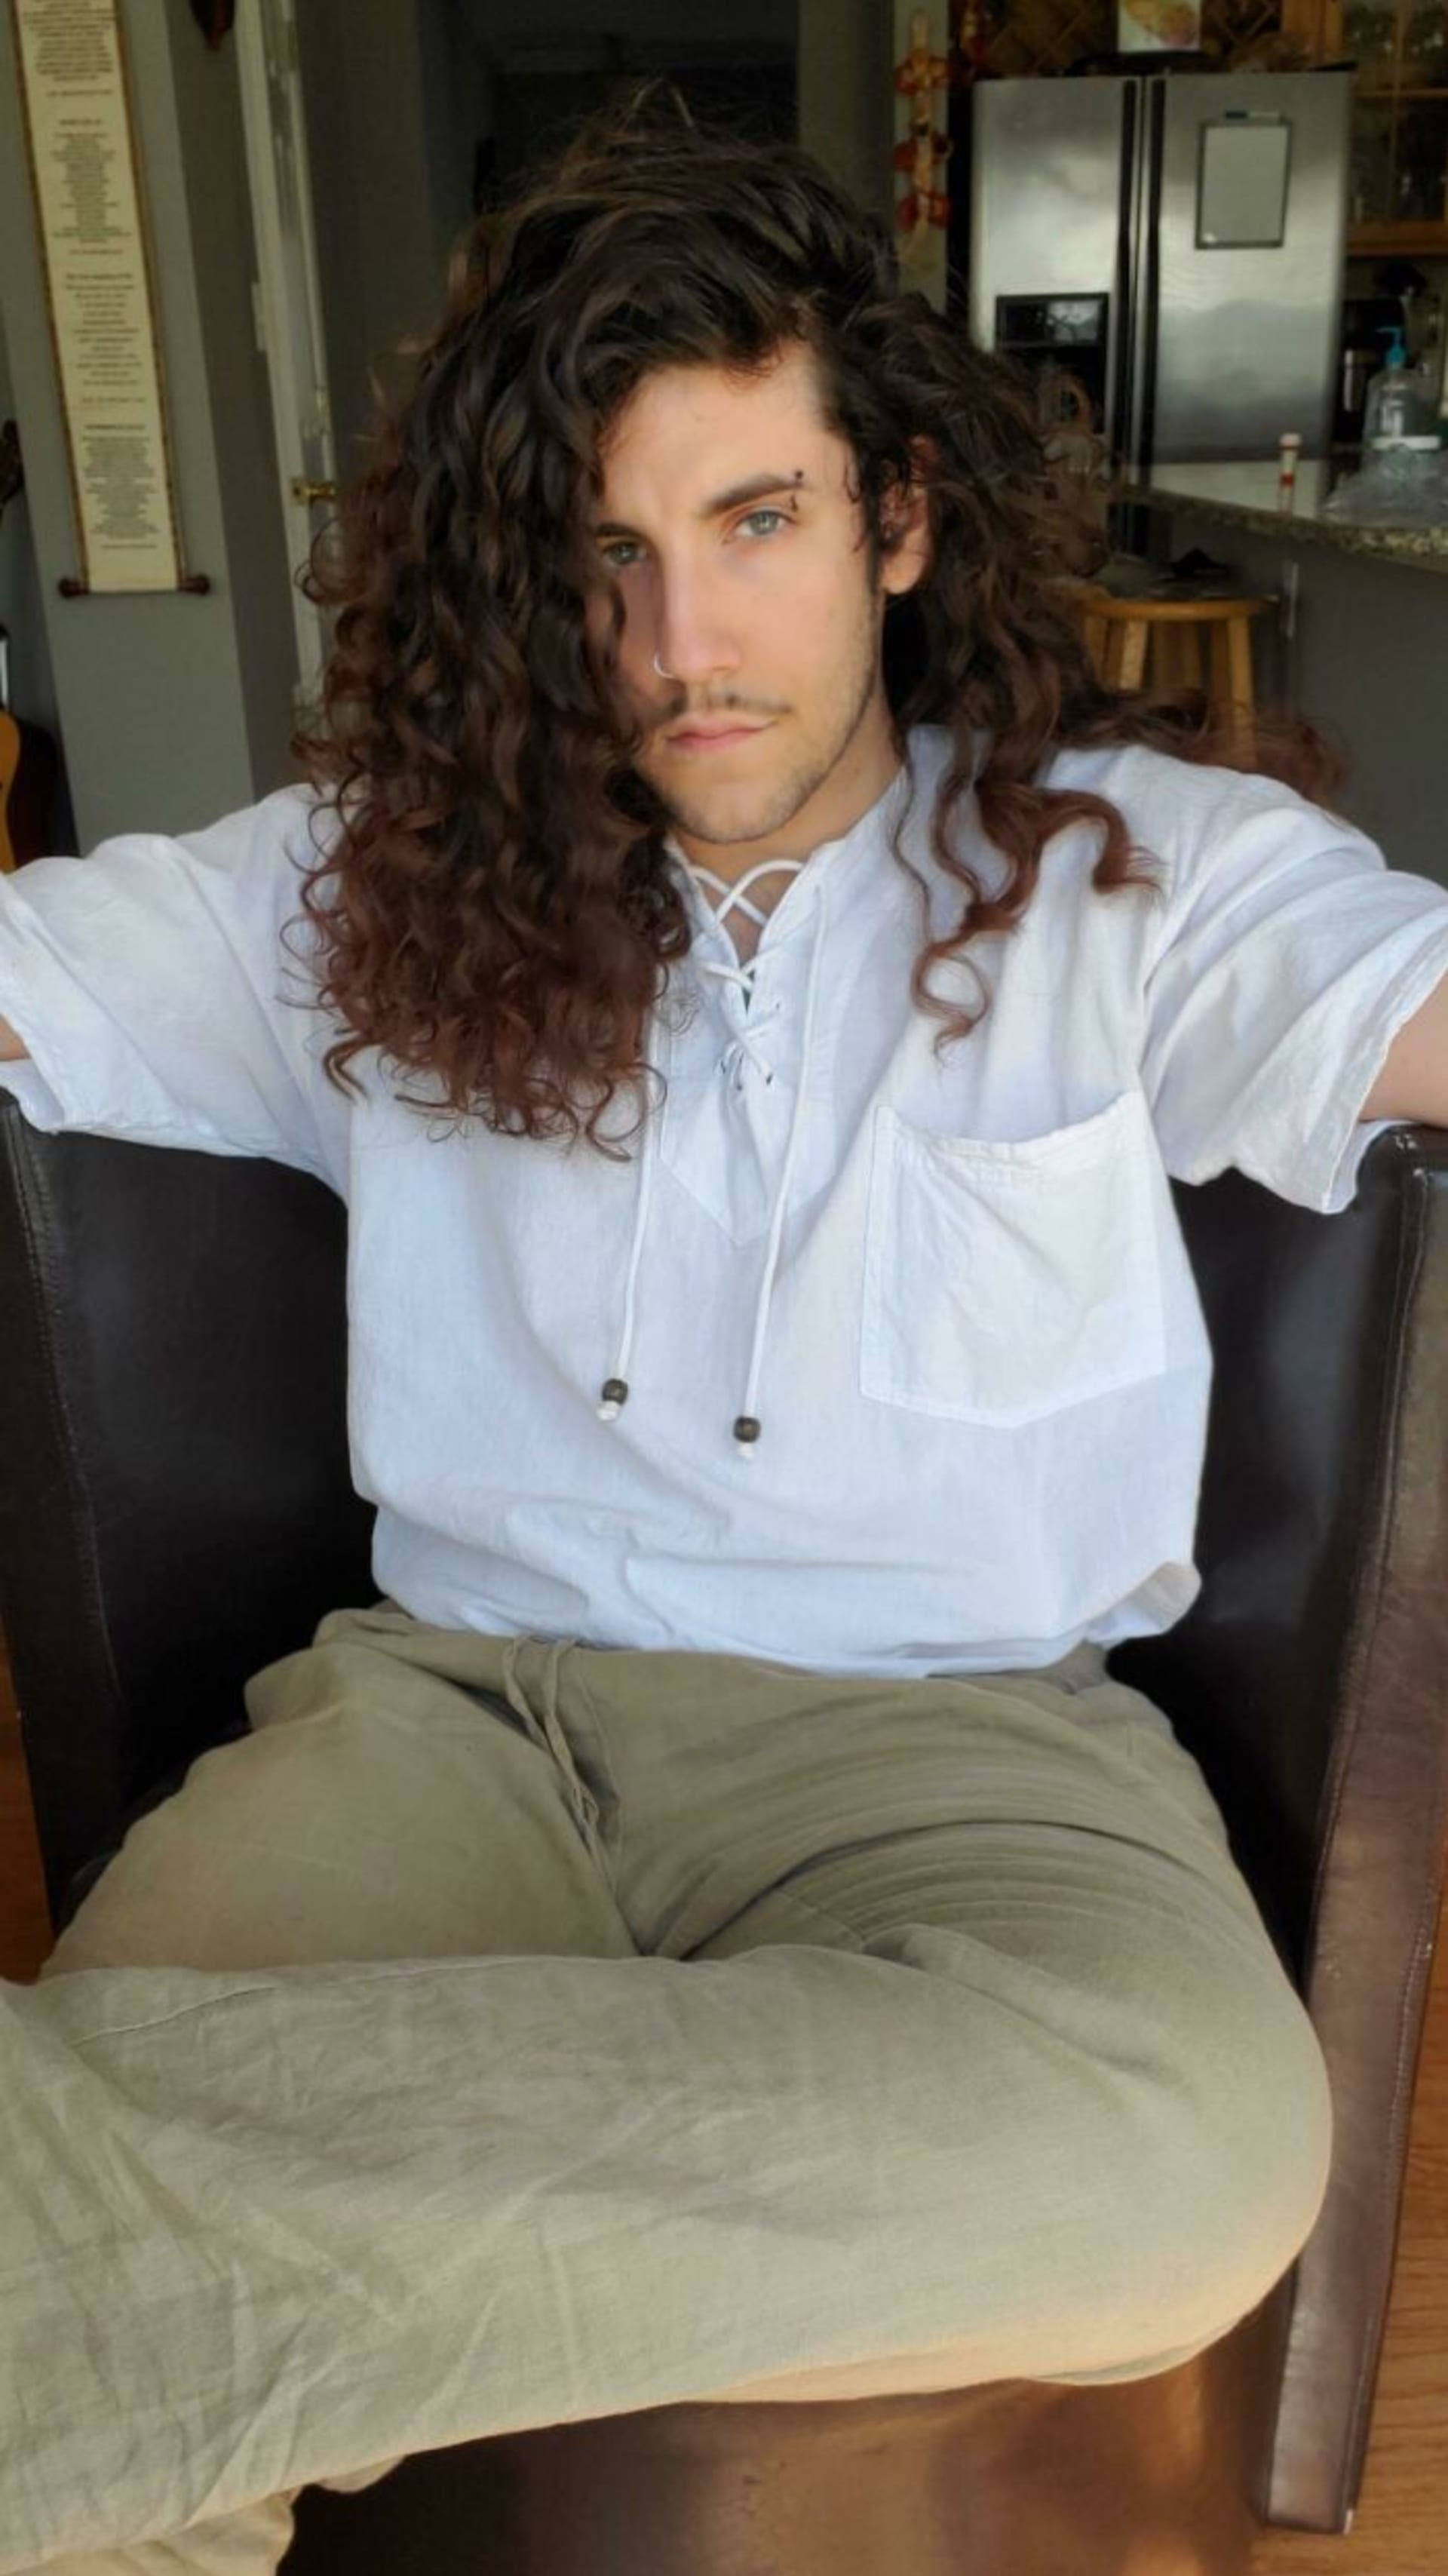 Sexy muži s dlouhými vlasy.